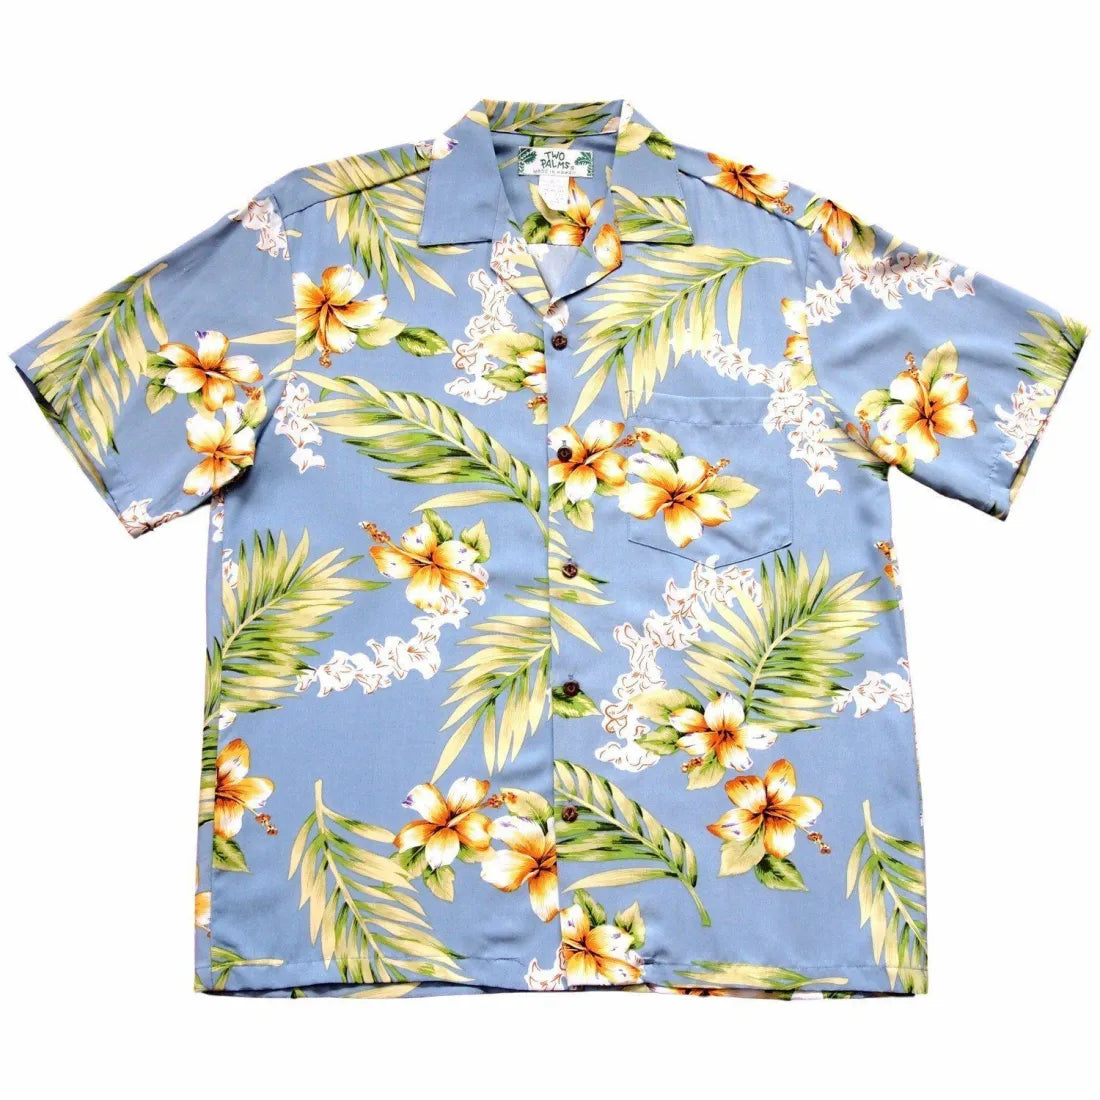 Atoll Blue Hawaiian Rayon Shirt - Made In Hawaii